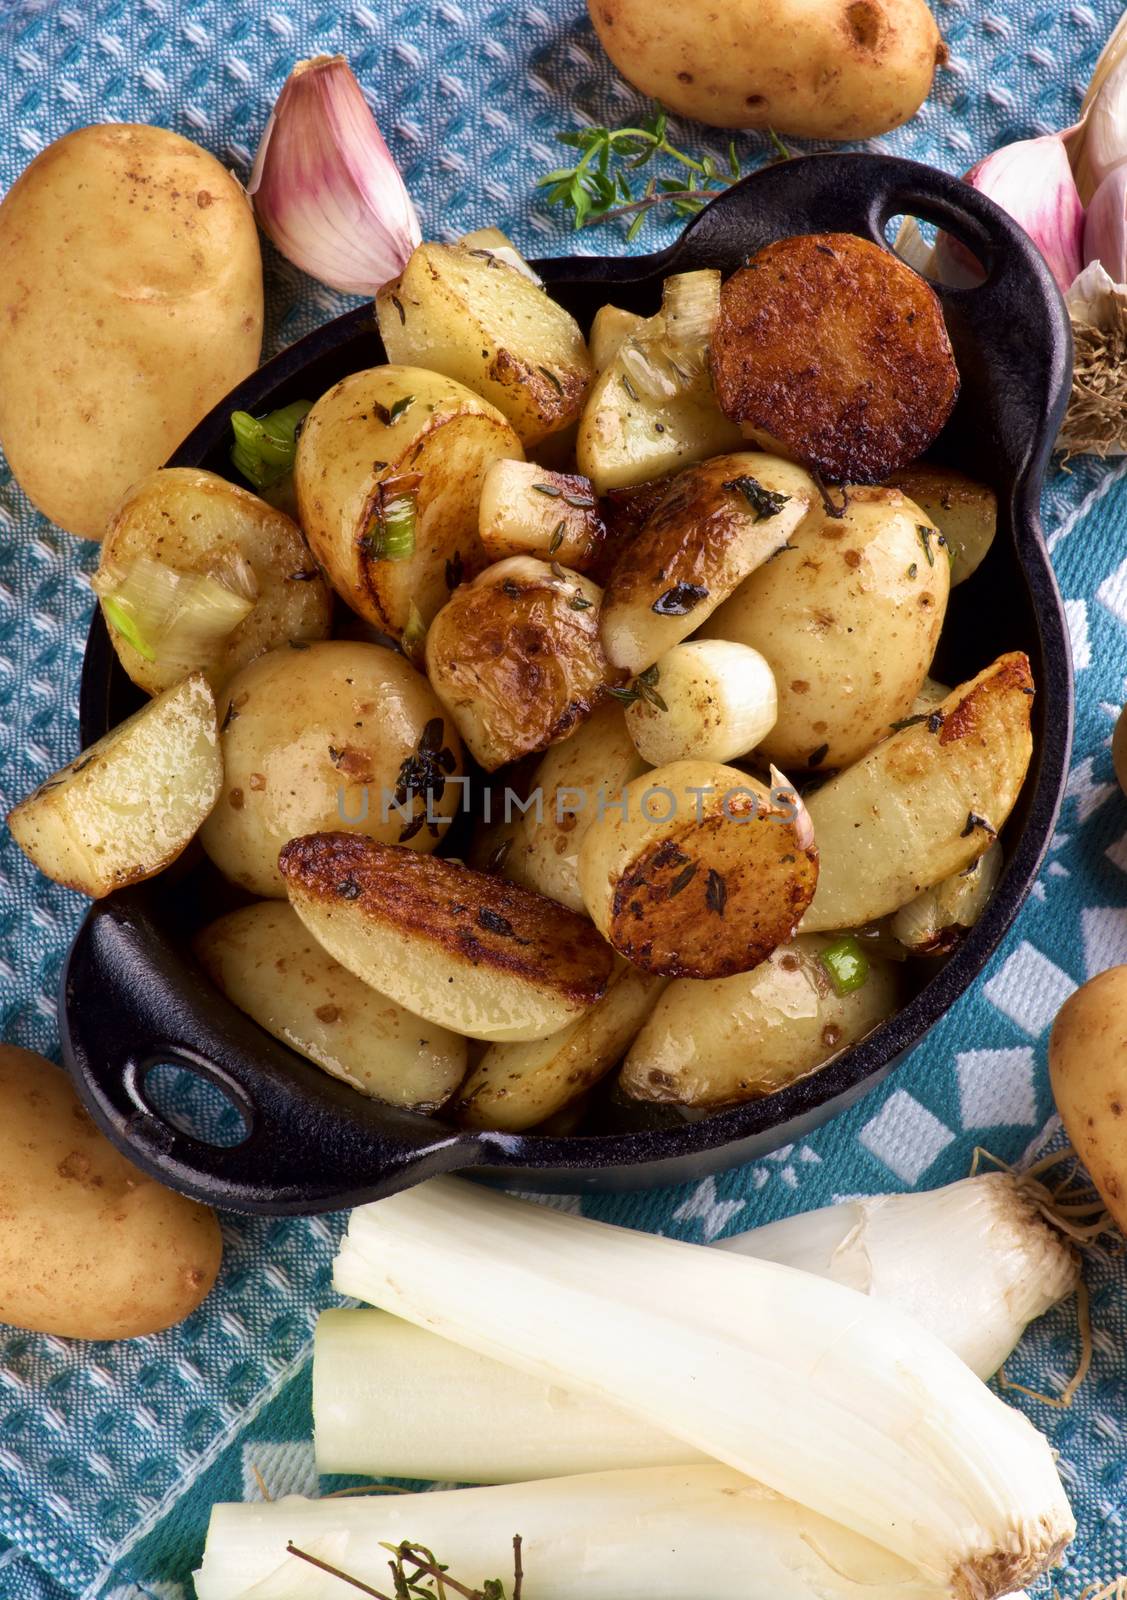 Roasted Potato Wedges by zhekos